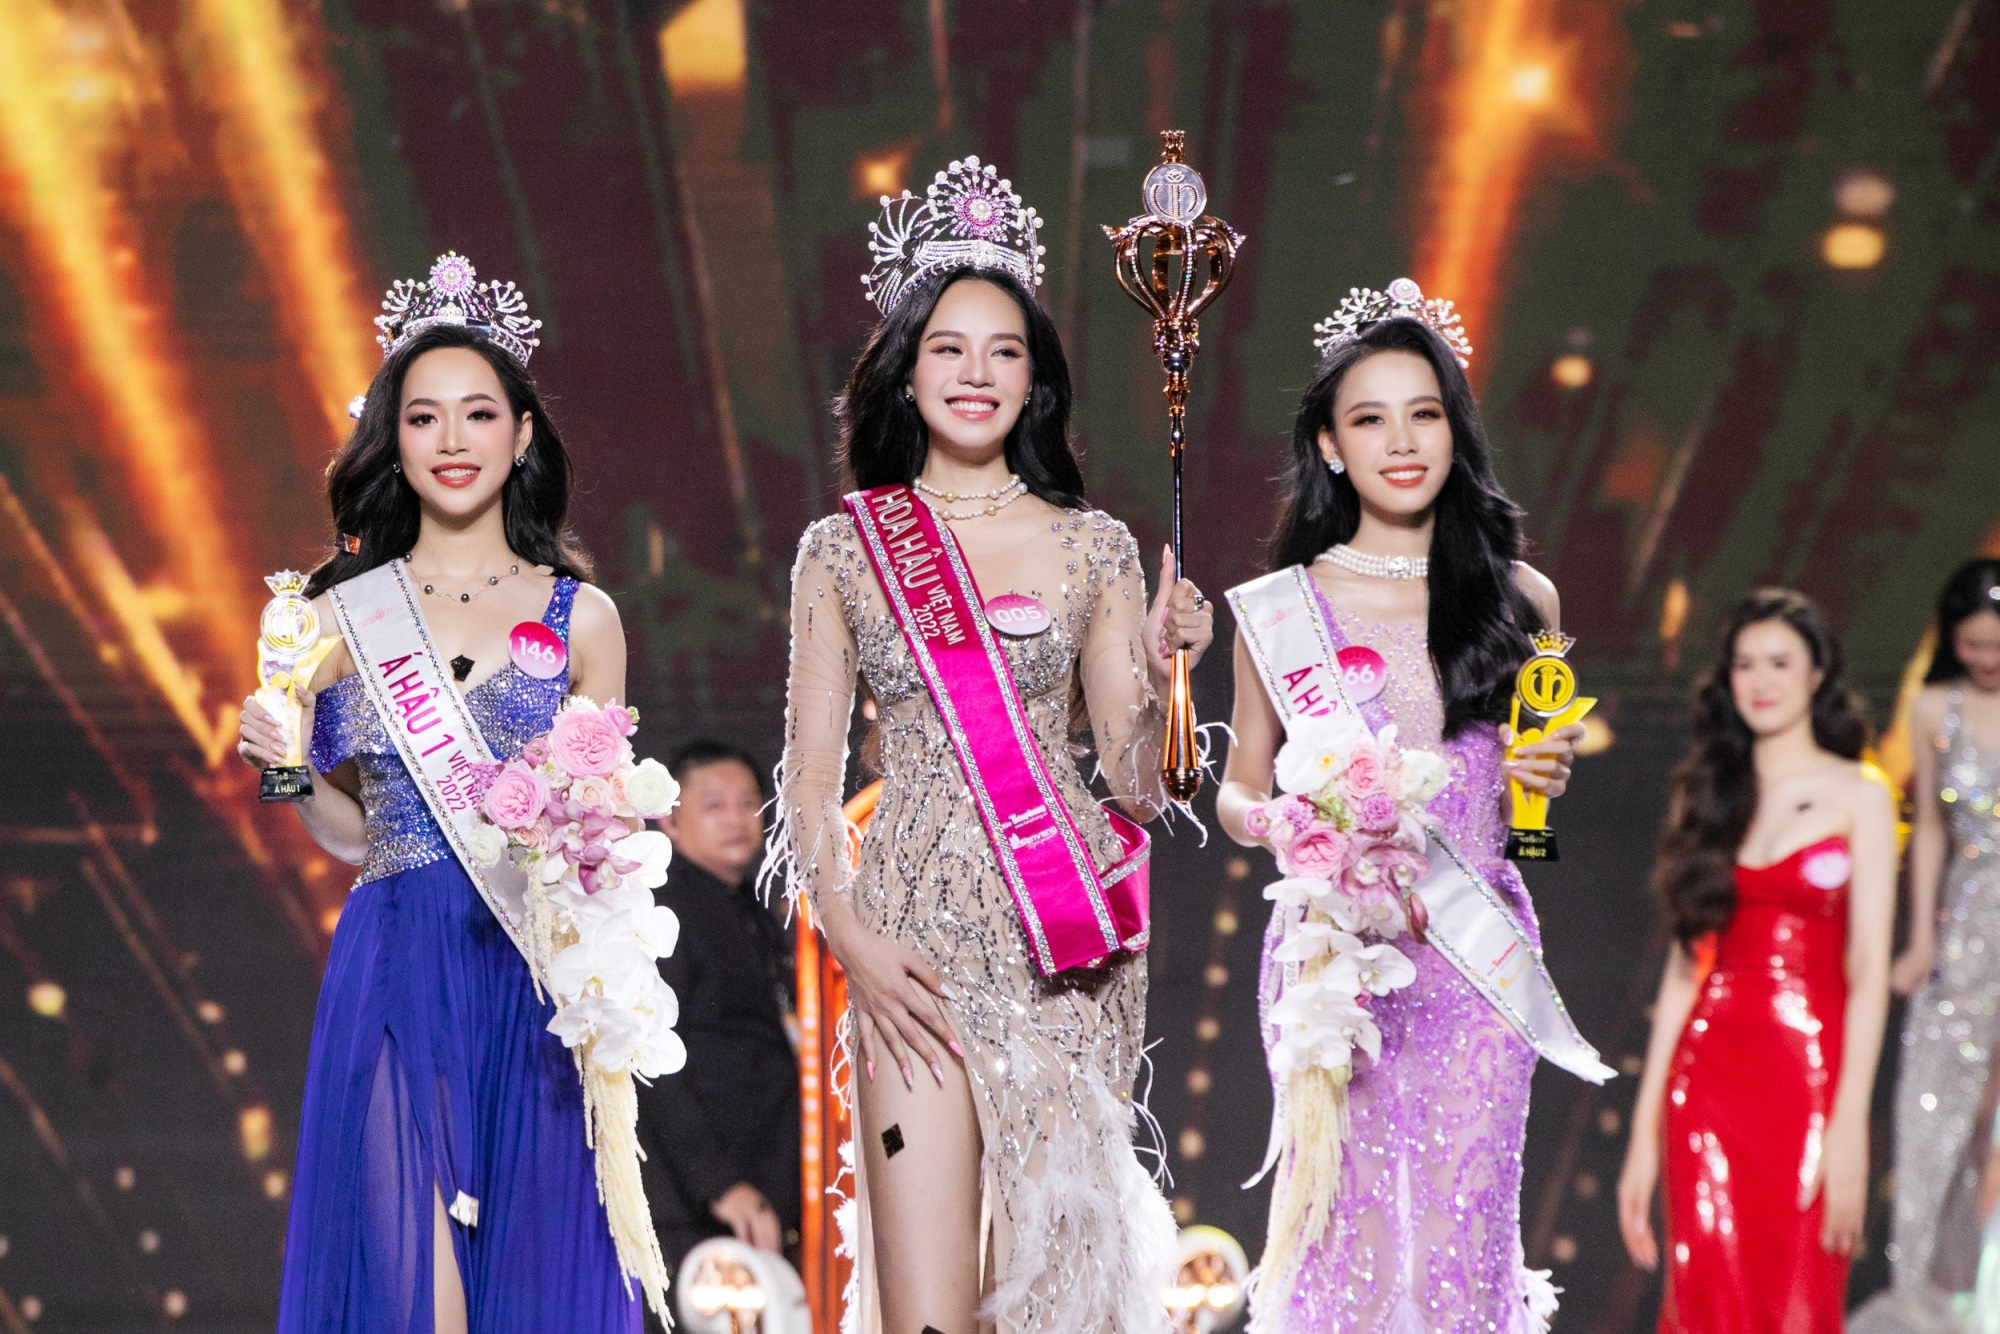 Hoa hậu Thanh Thủy bị nghi gian lận để thắng vì quá nhạt nhòa, BTC lên tiếng - Ảnh 1